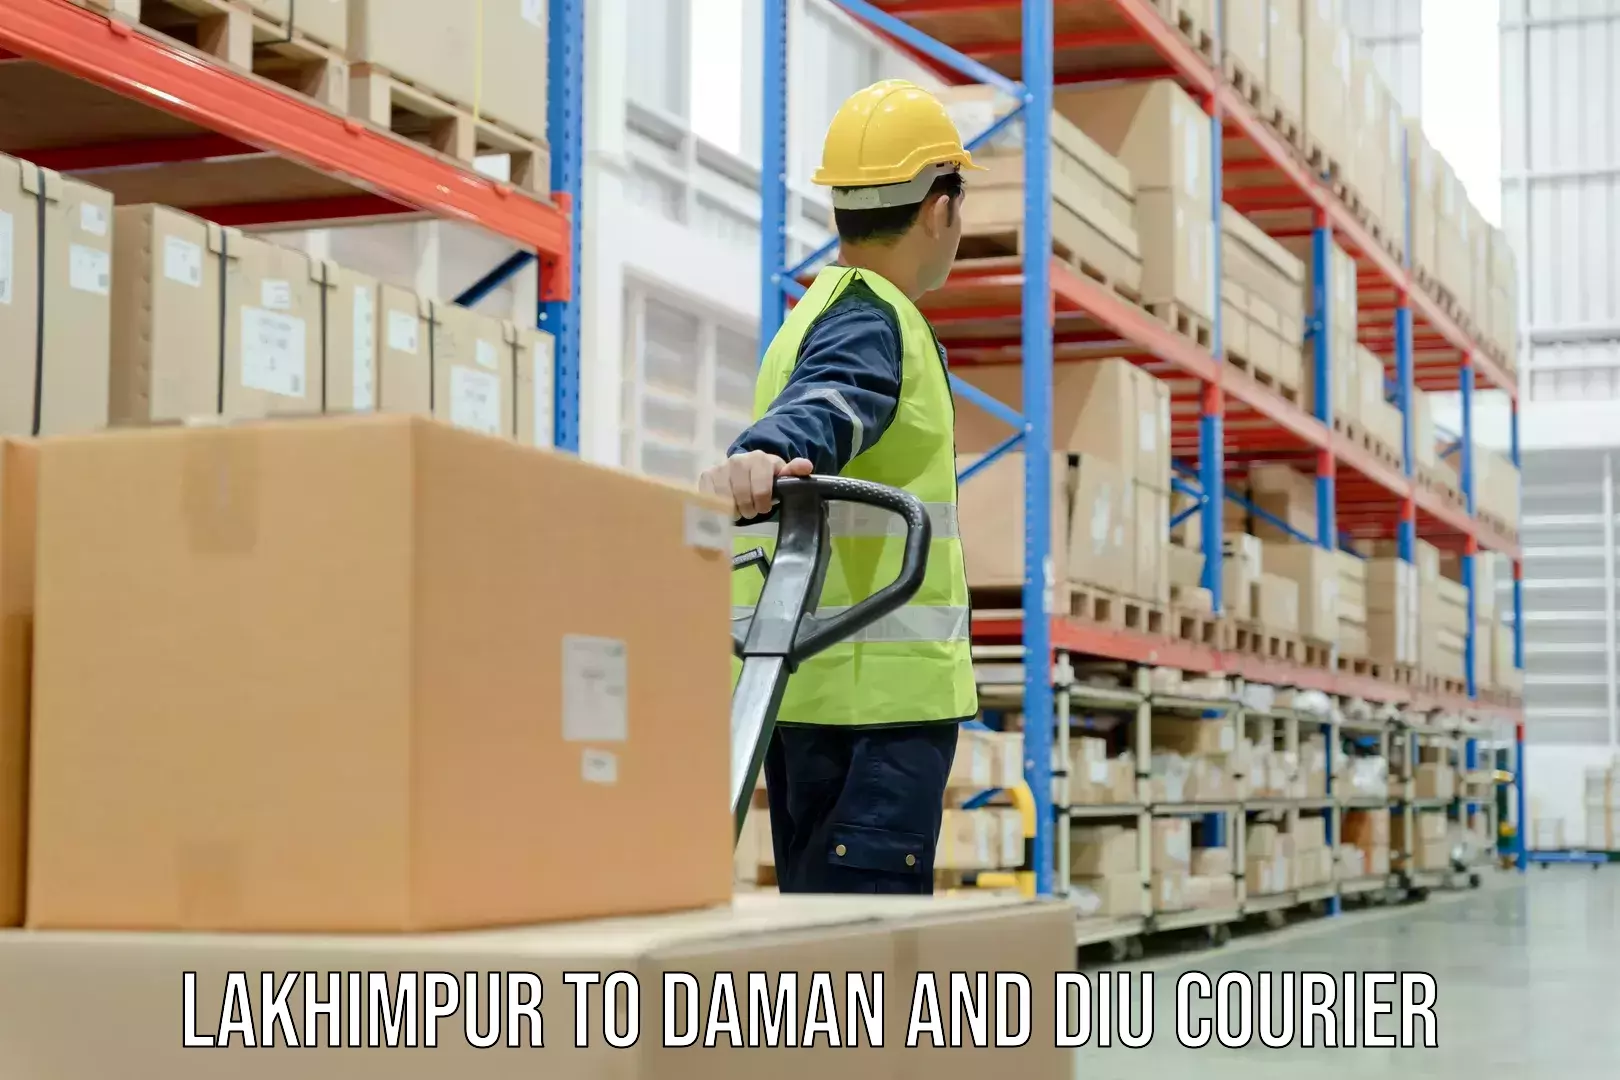 International parcel service Lakhimpur to Daman